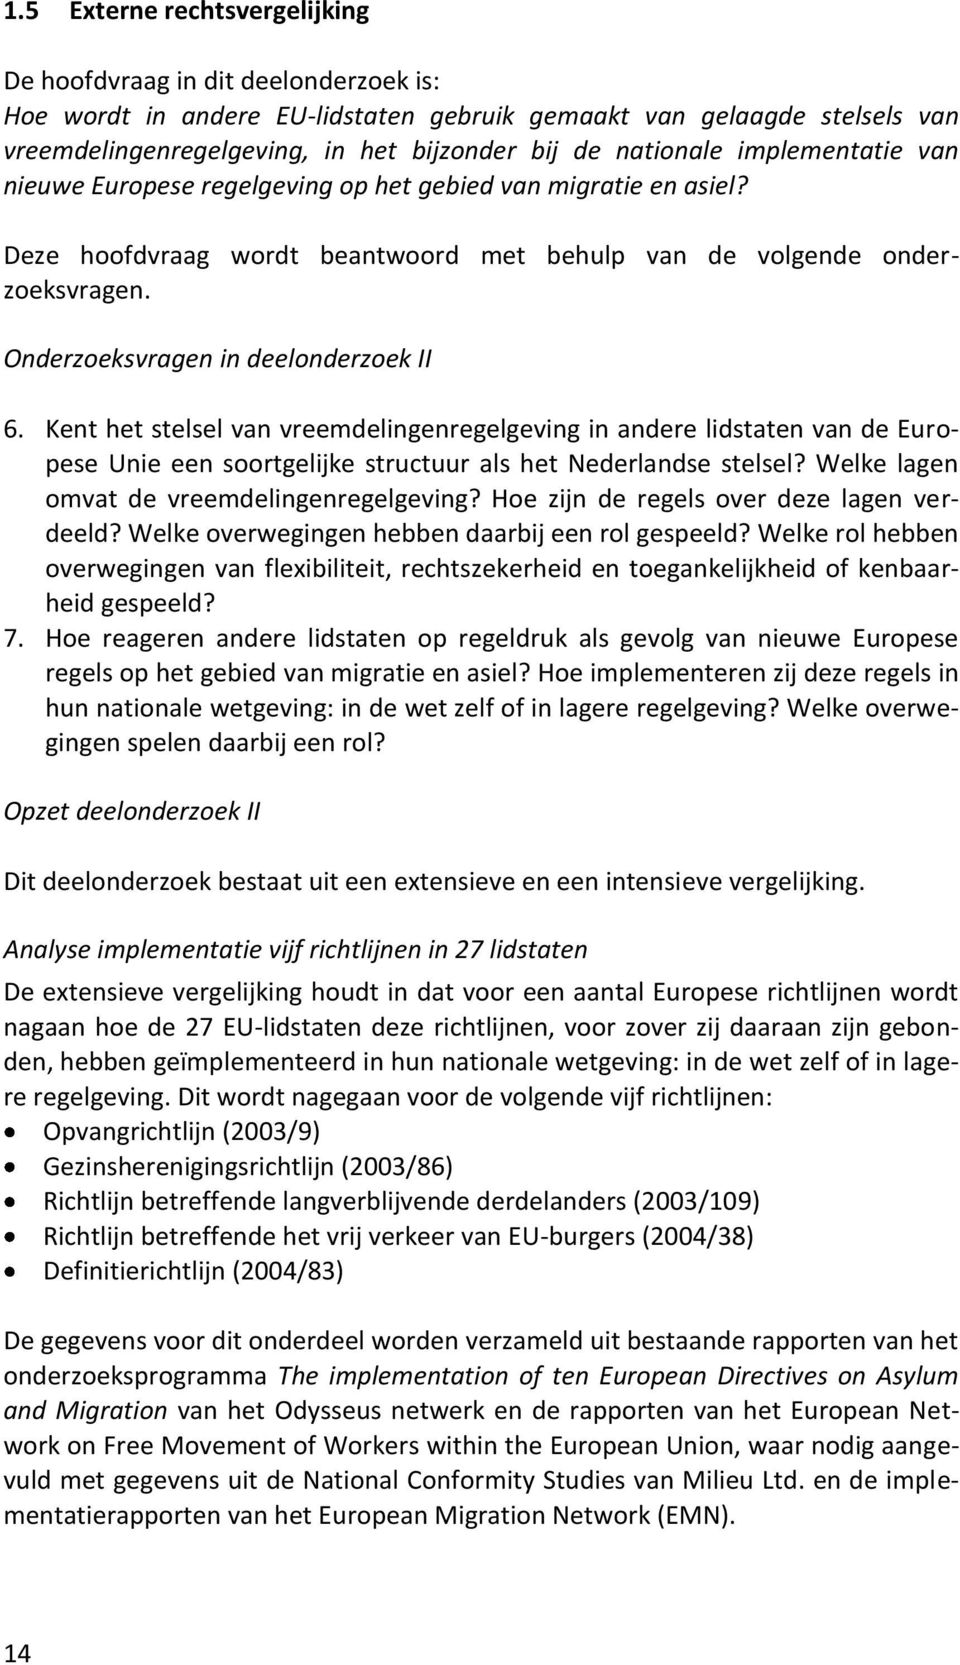 Onderzoeksvragen in deelonderzoek II 6. Kent het stelsel van vreemdelingenregelgeving in andere lidstaten van de Europese Unie een soortgelijke structuur als het Nederlandse stelsel?